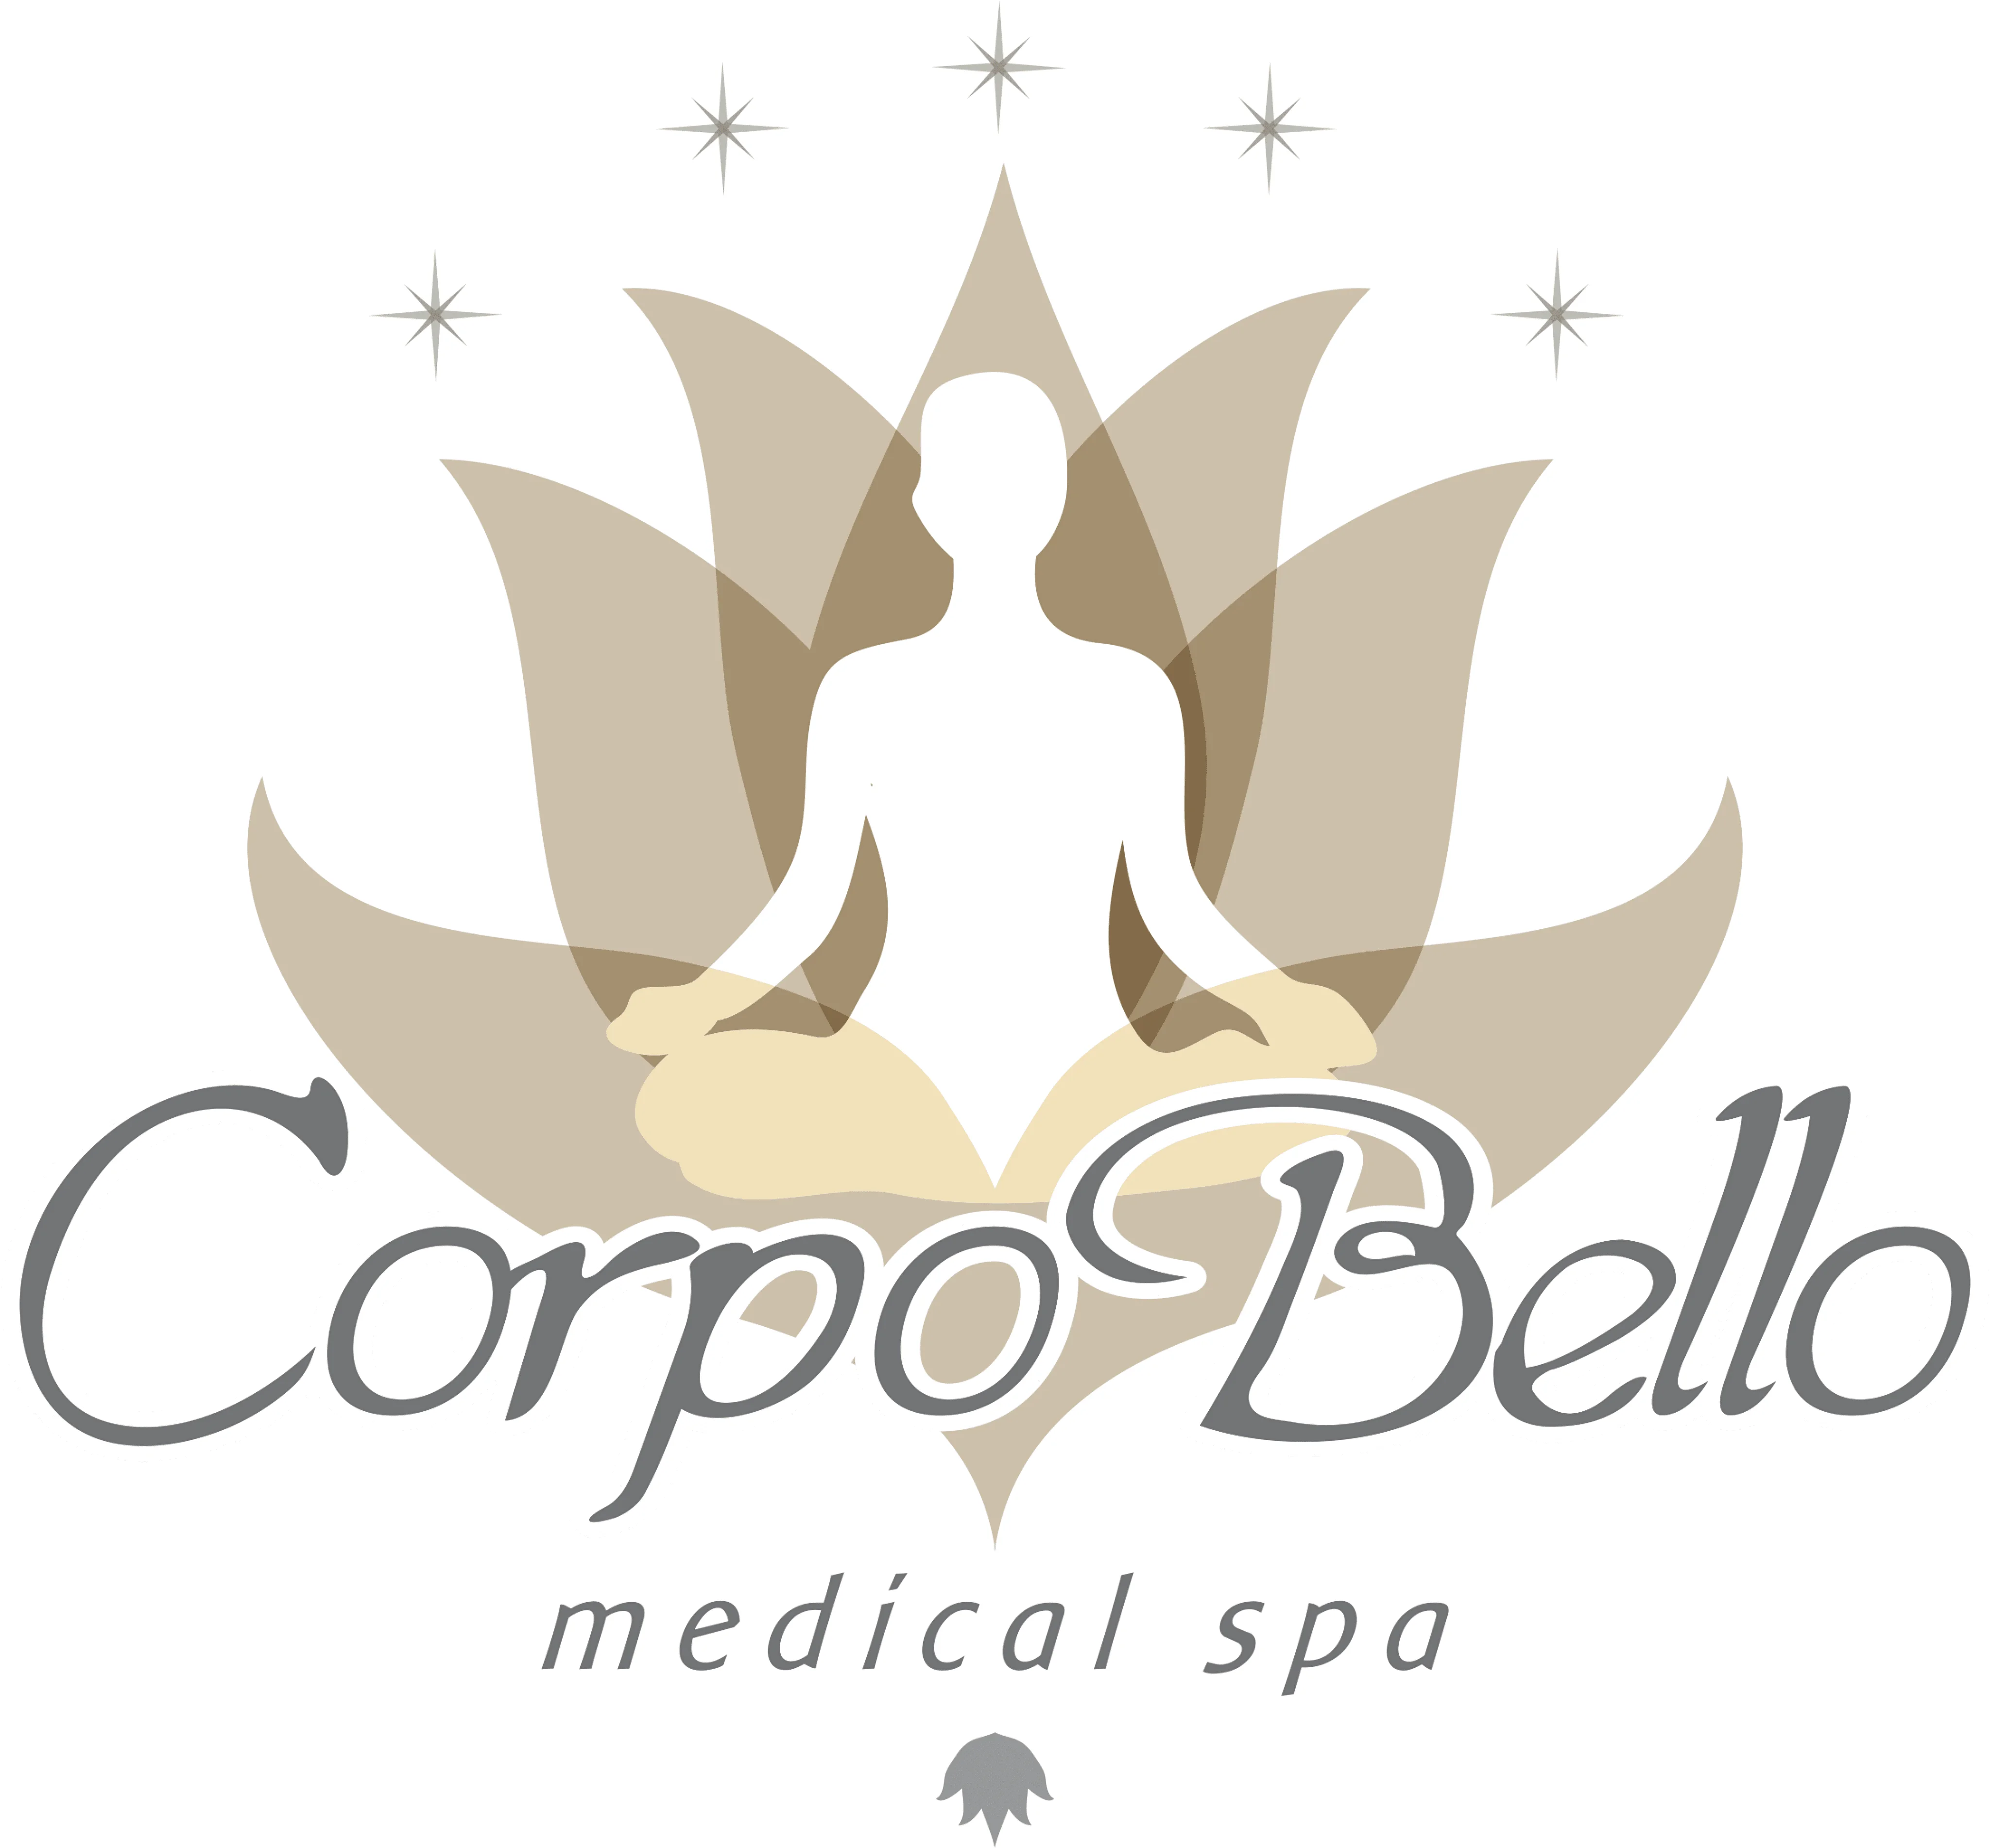 Spa-corpo-bello-medical-spa-7369